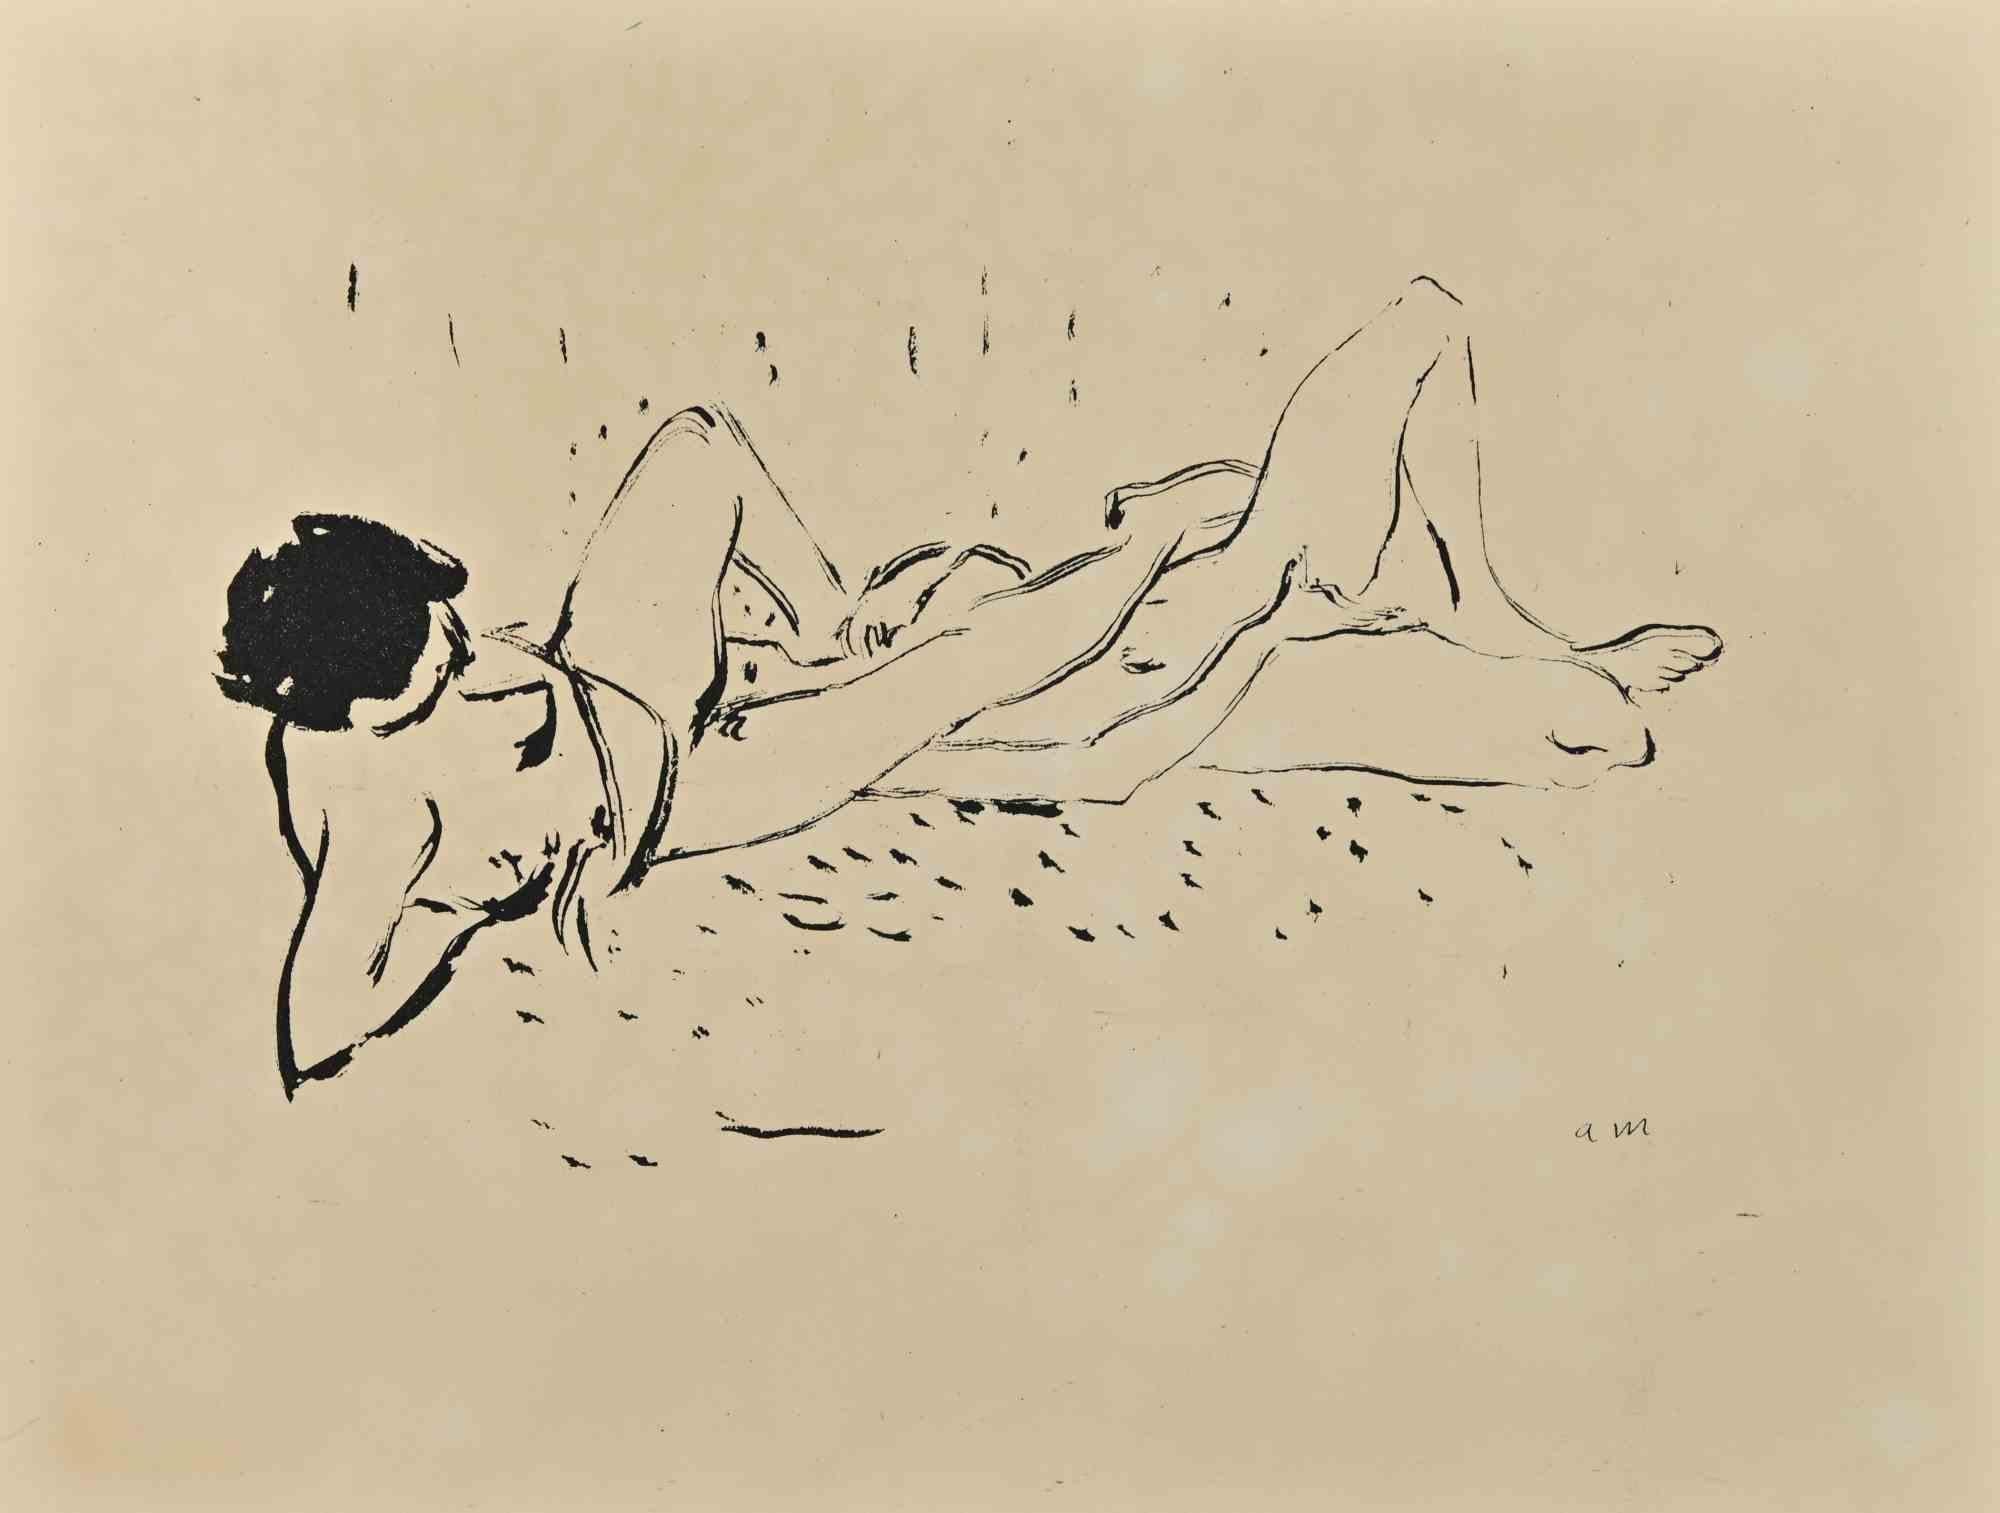 Erotic Scene ist eine wunderschöne Lithographie auf elfenbeinfarbenem Papier, die in den 1920er Jahren von Albert Marquet geschaffen wurde.  (Bordeaux, 1875 - Paris, 1947).

Monogrammiert auf der Platte am unteren Rand. 

Mit dem Stempel auf der